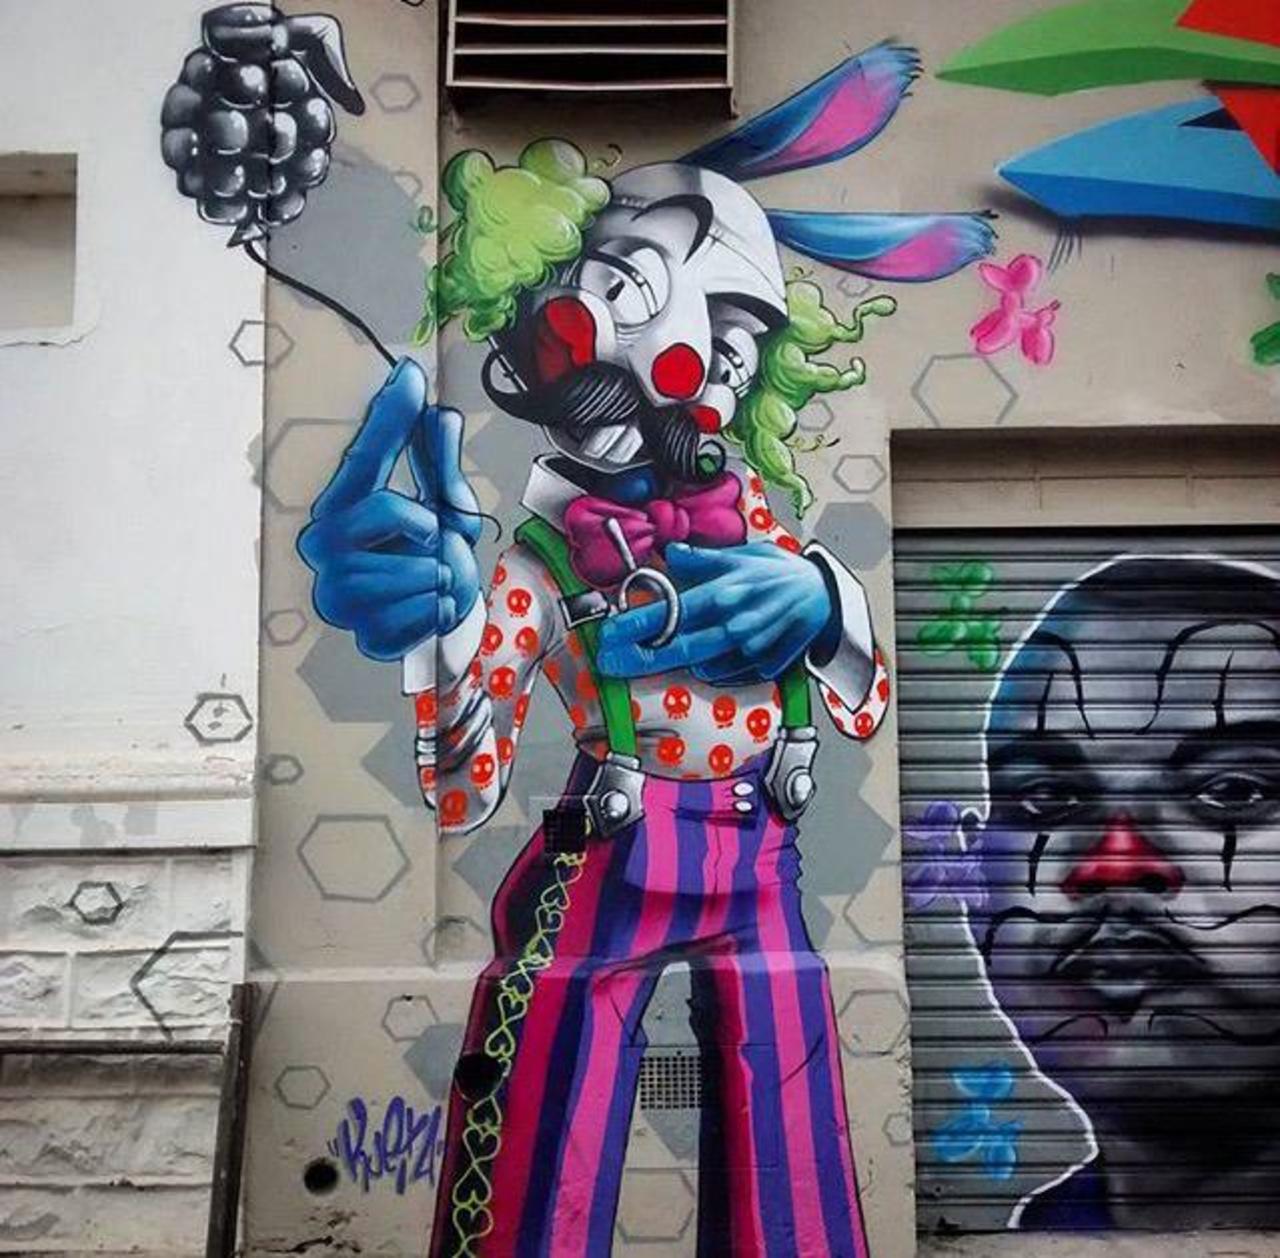 New Street Art by Karen Kueia 

#art #graffiti #mural #streetart http://t.co/4JEmADkbwa